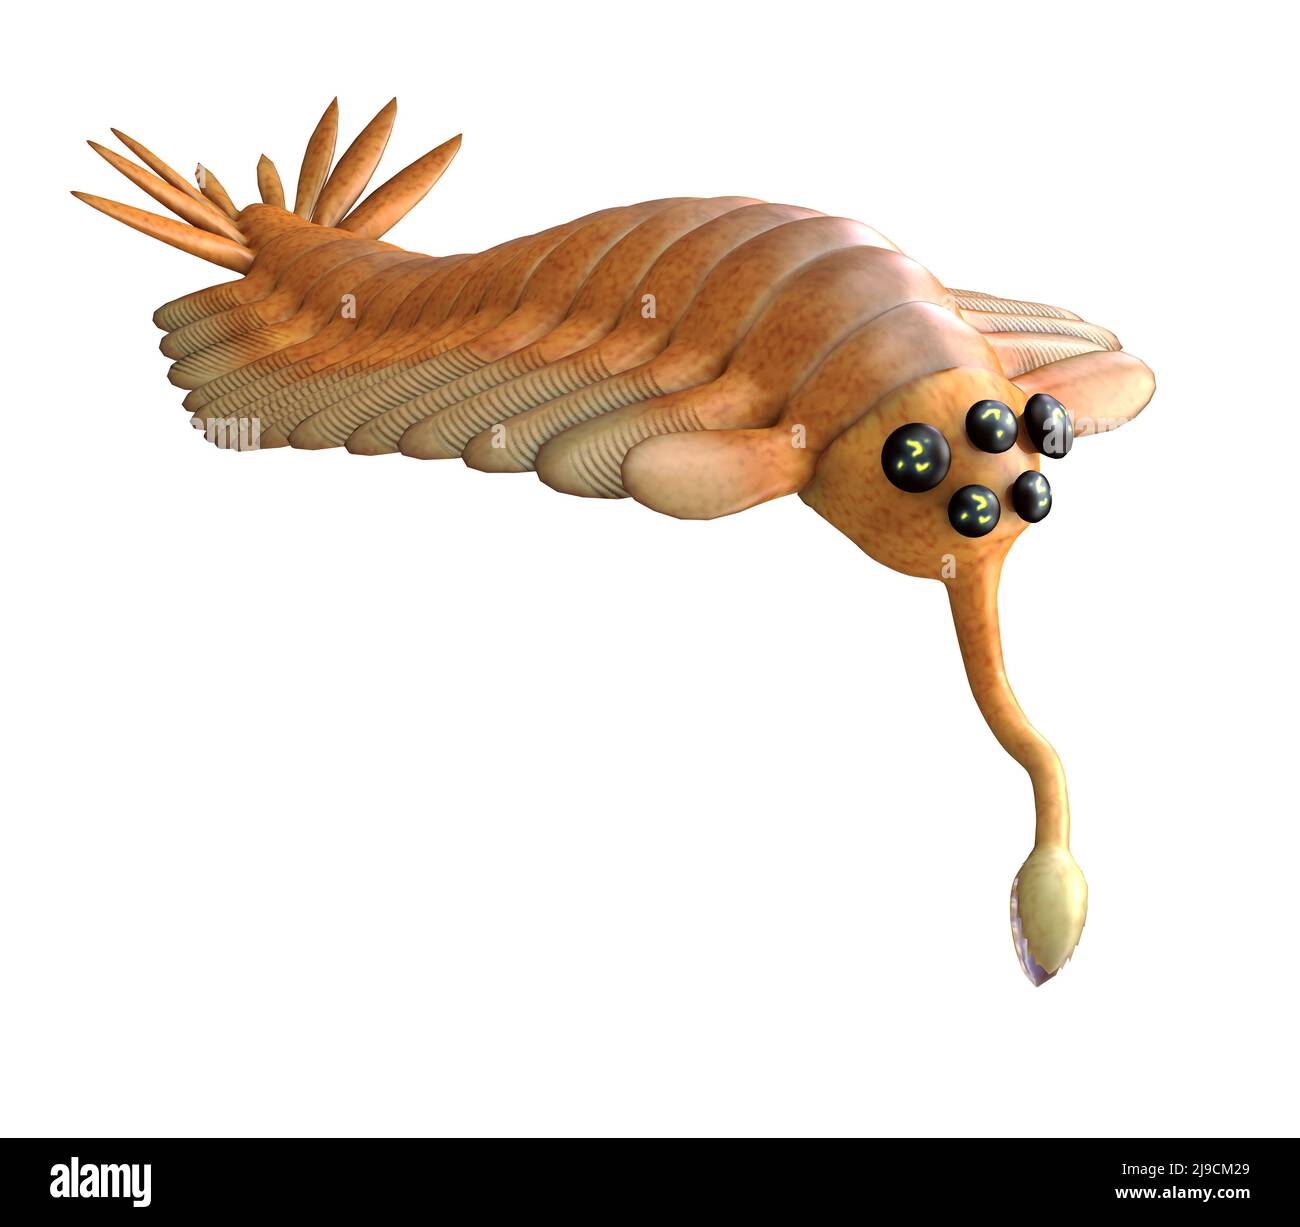 Opabinia war ein arthropod räuberisches Tier, das in den Meeren der kambrischen Zeit von British Columbia lebte. Stockfoto